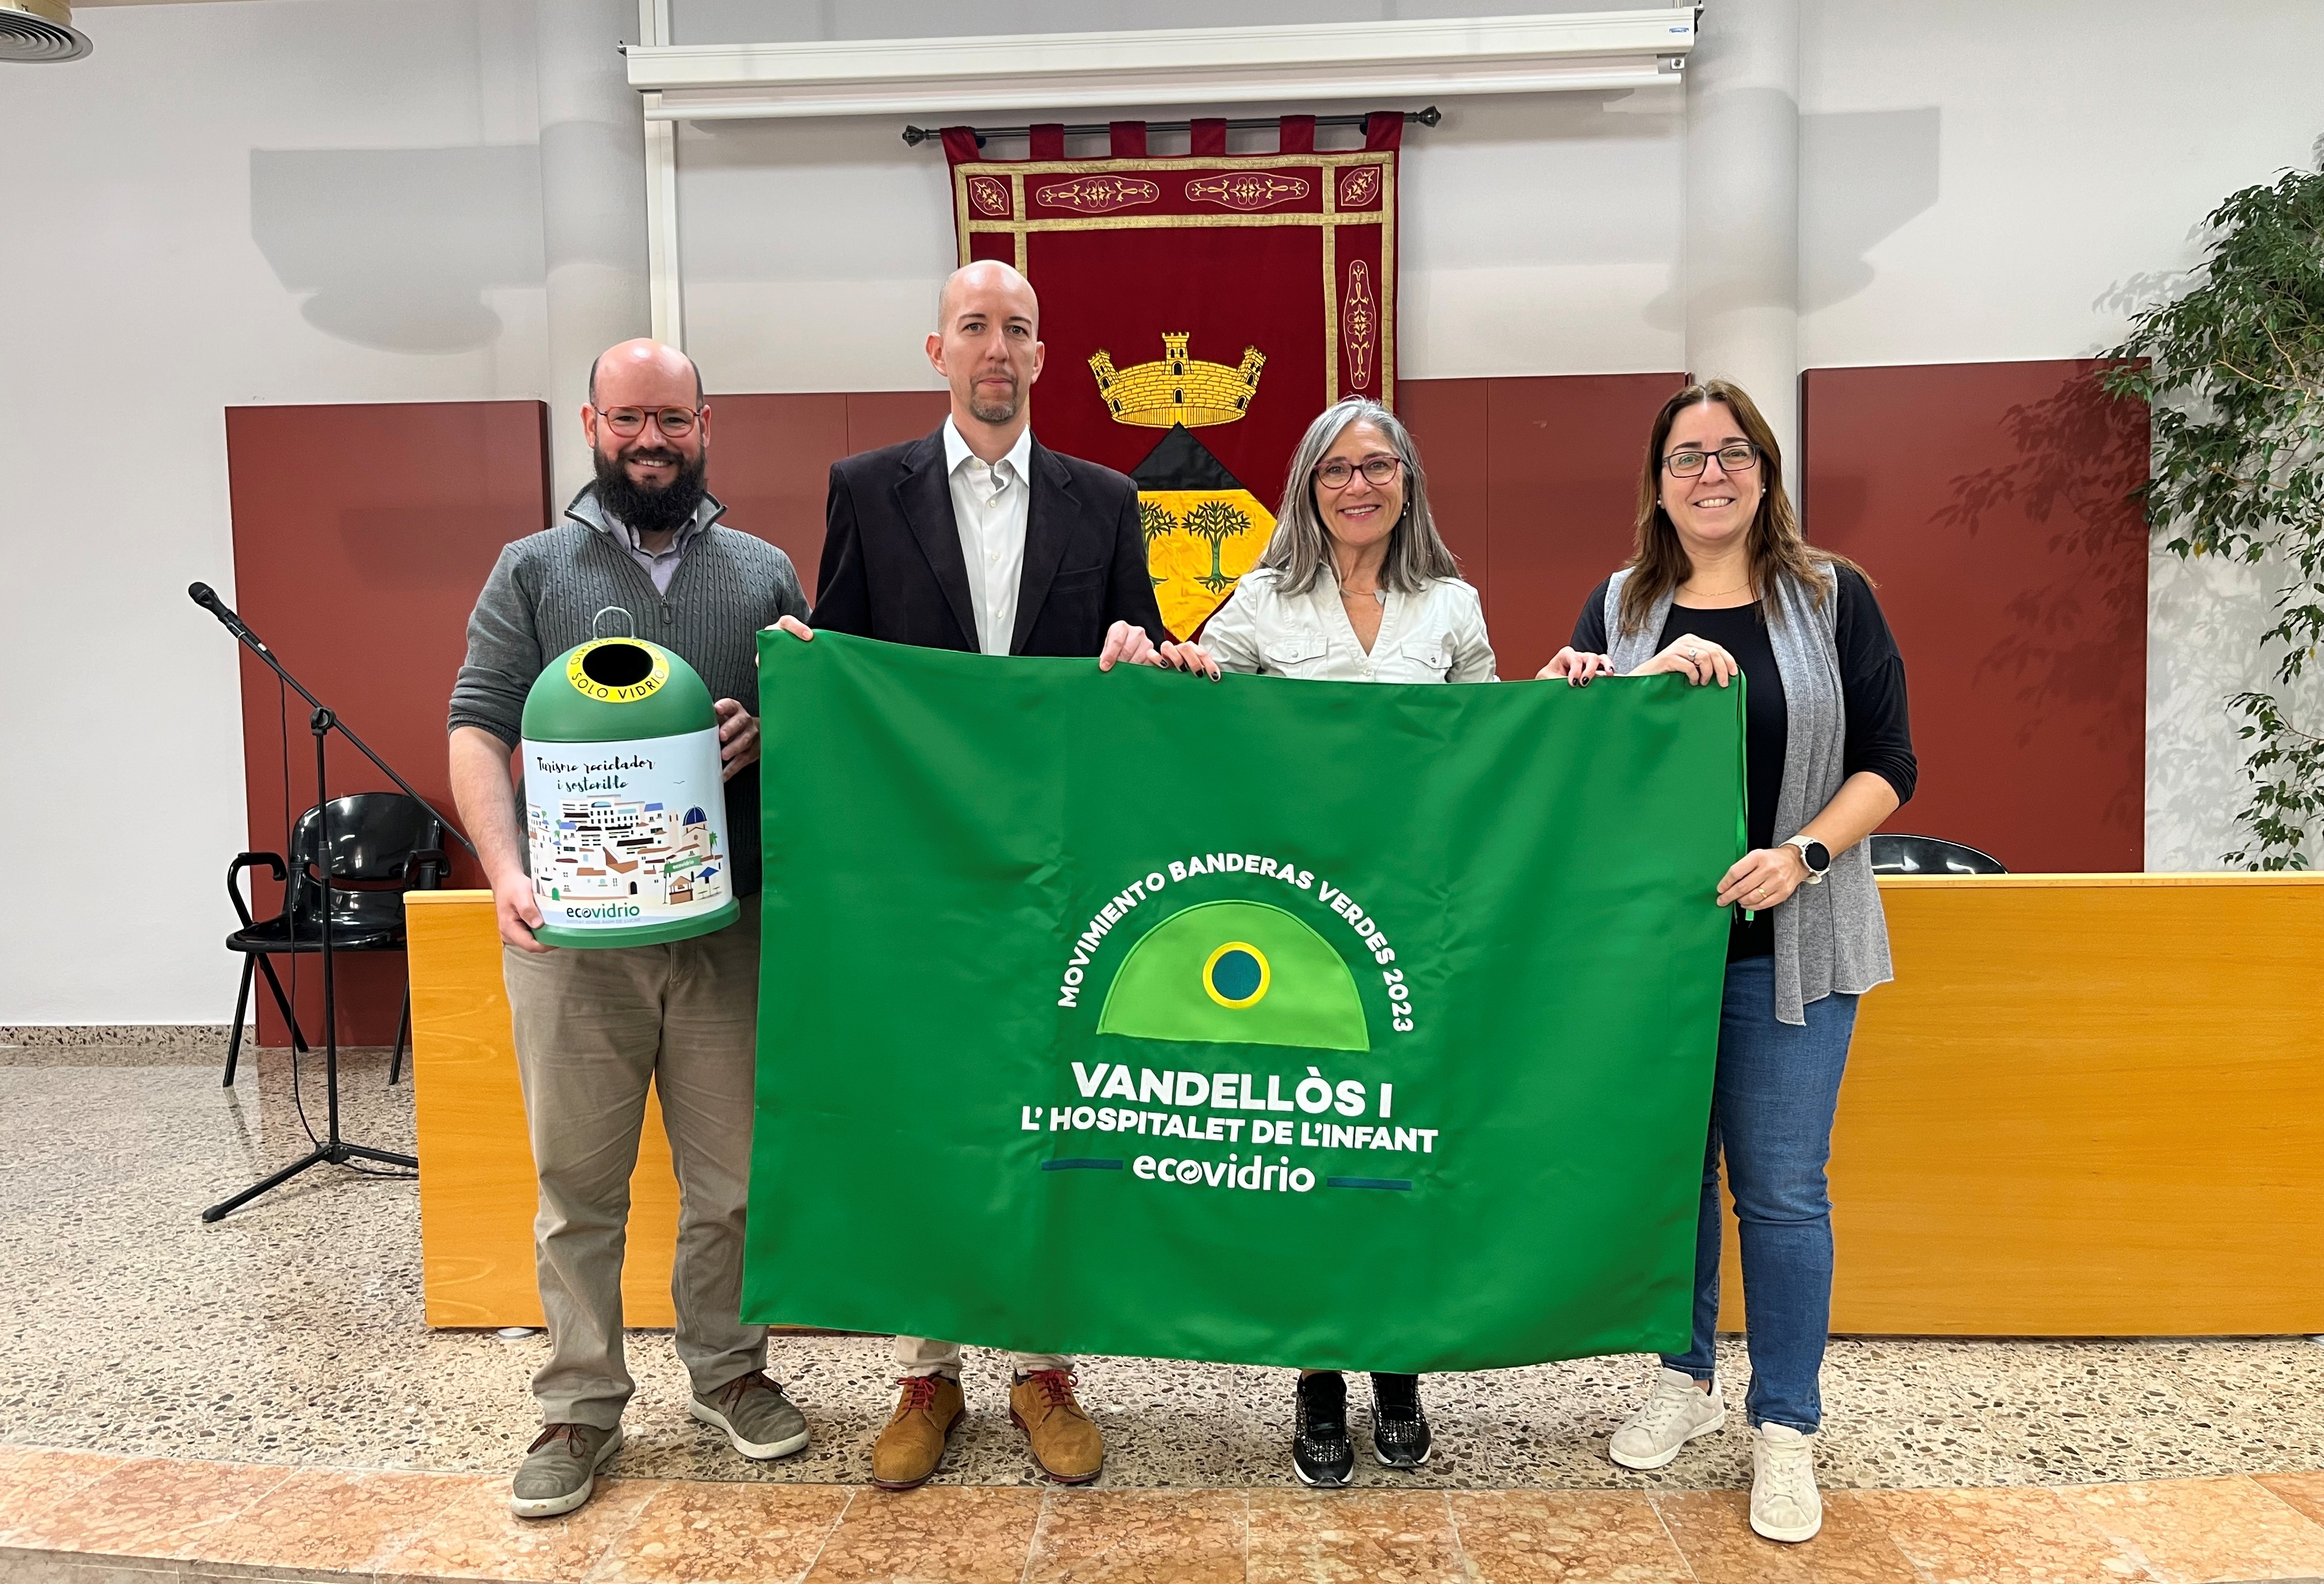 Vandellòs i l’Hospitalet de l’Infant aconsegueix la Bandera Verda d’Ecovidrio gràcies al seu compromís amb la sostenibilitat durant aquest estiu